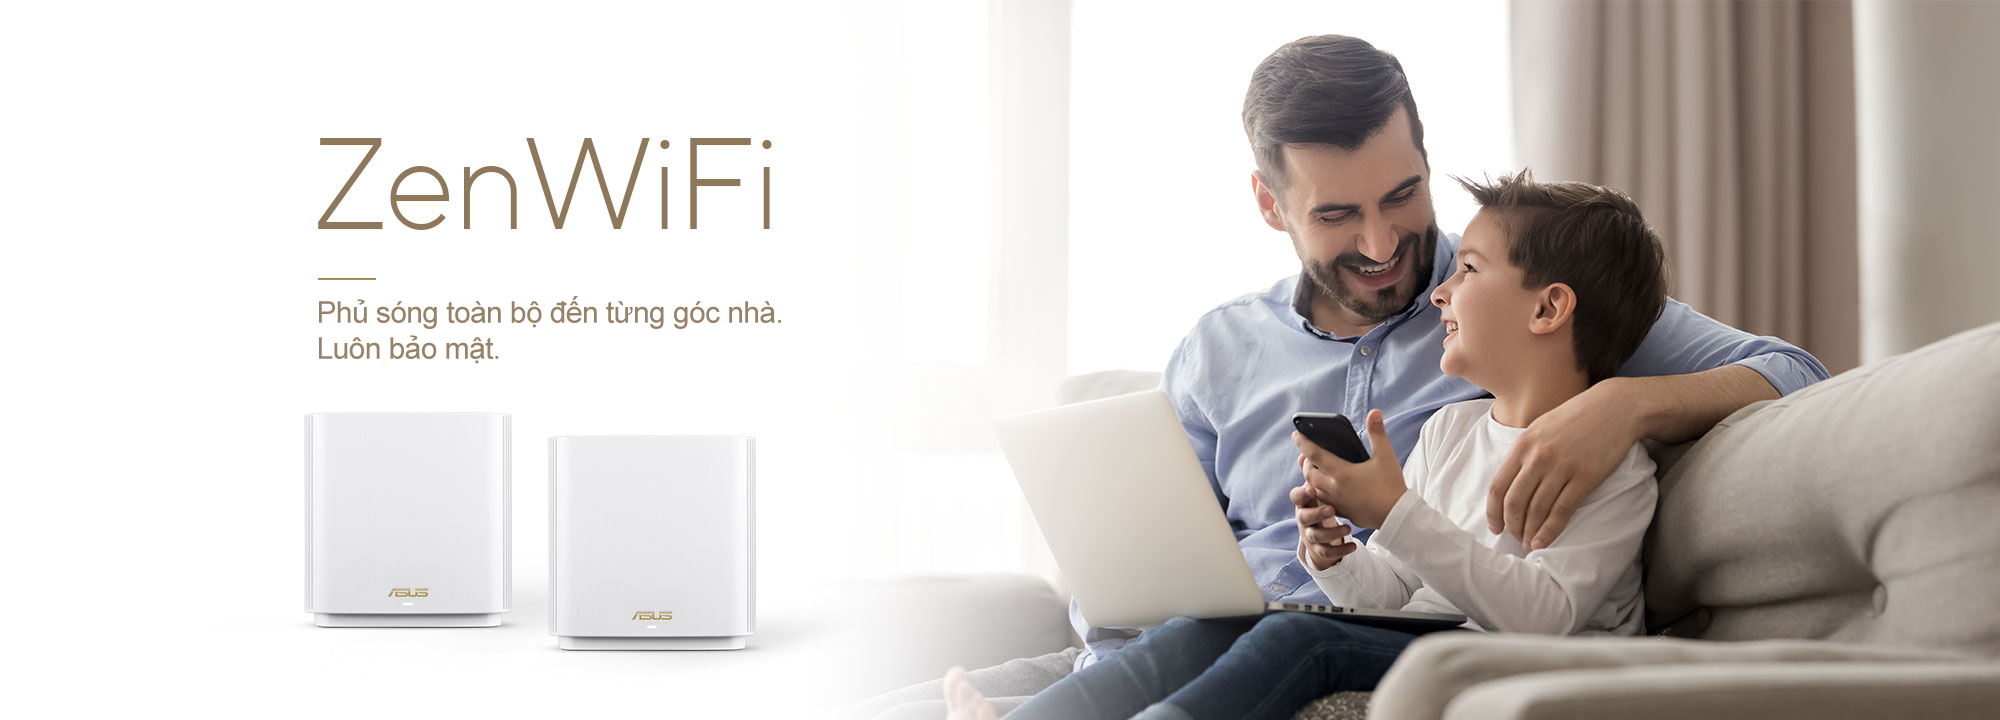 ASUS ZenWiFi là hệ thống WiFi mesh (WiFi lưới) phủ sóng toàn bộ nhà tốt nhất, cung cấp kết nối WiFi ổn định và nhanh cho tất cả các thiết bị của bạn.